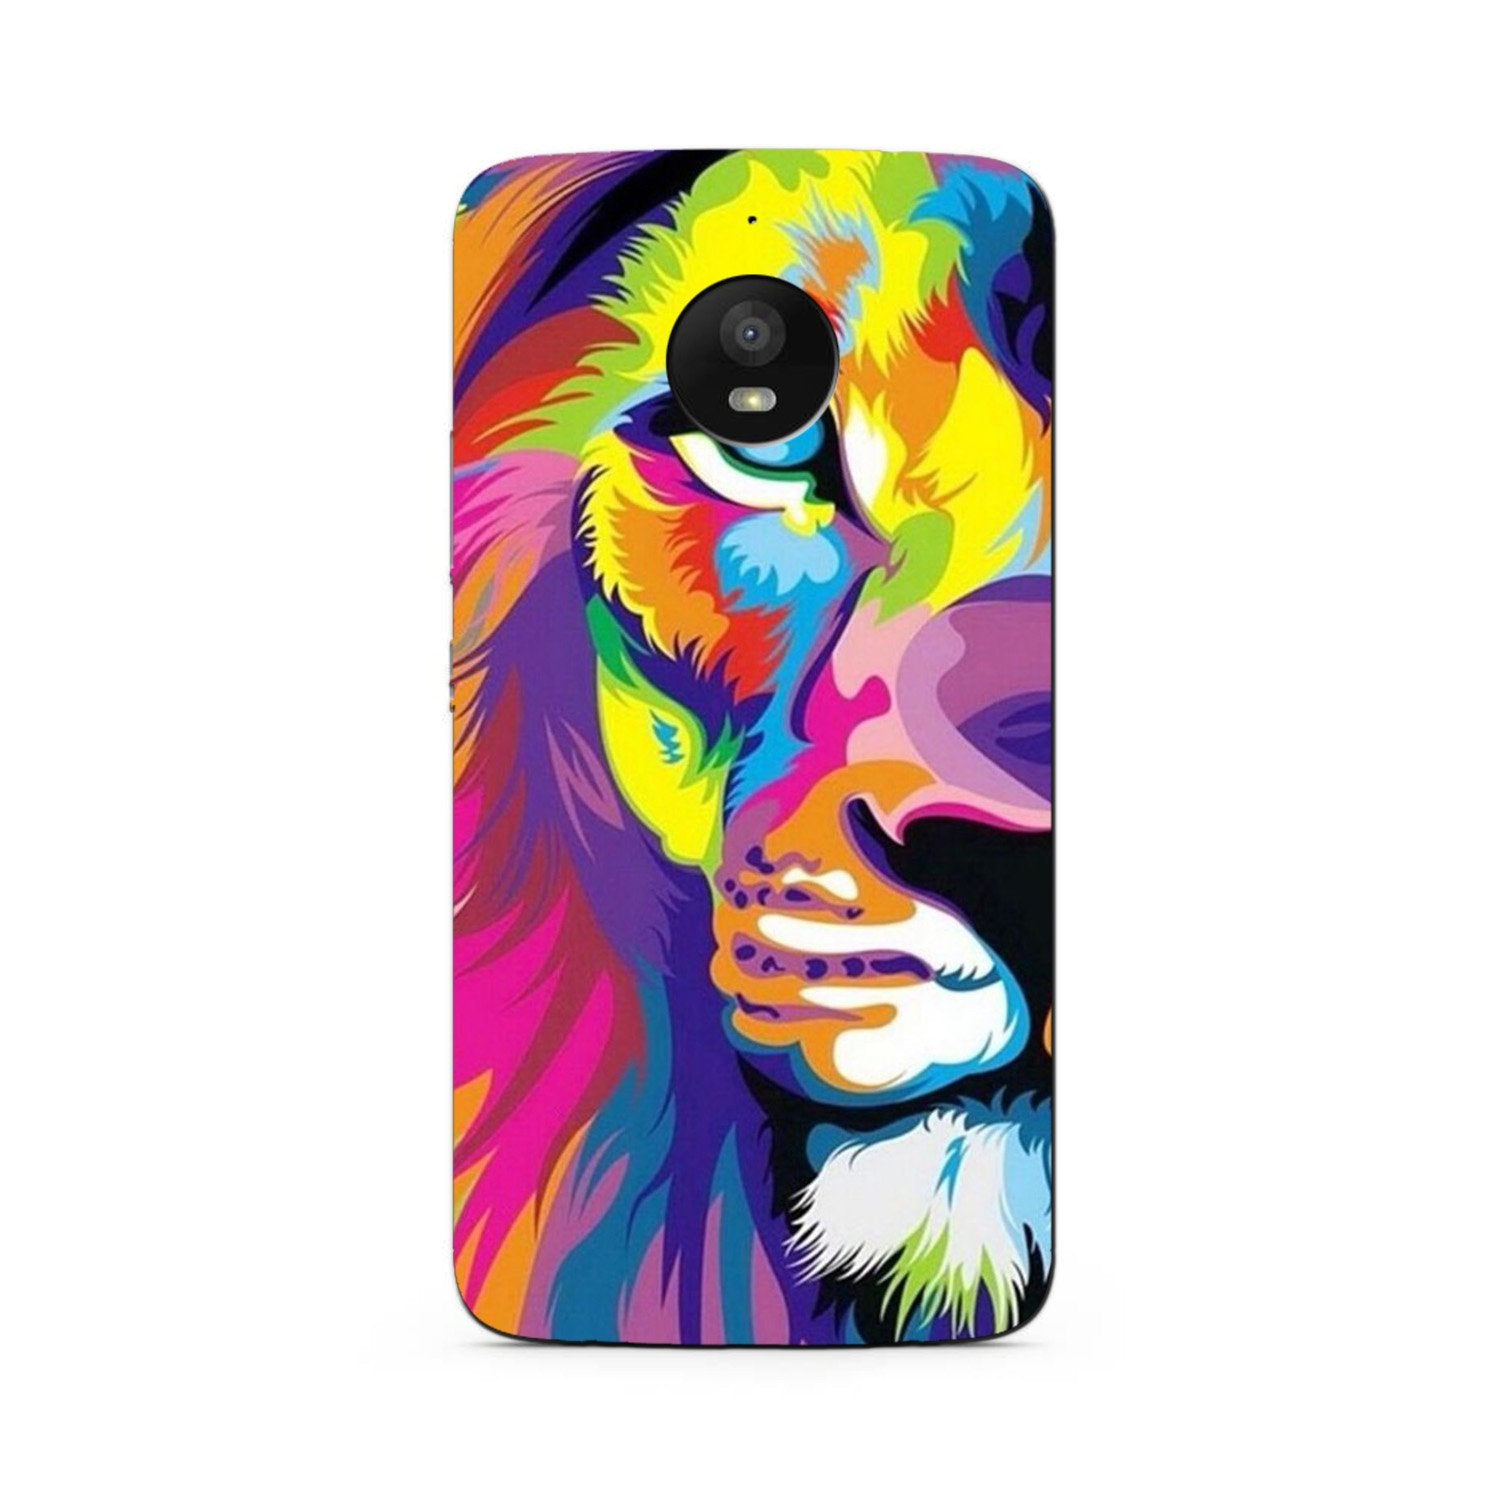 Colorful Lion Case for Moto E4 Plus(Design - 110)